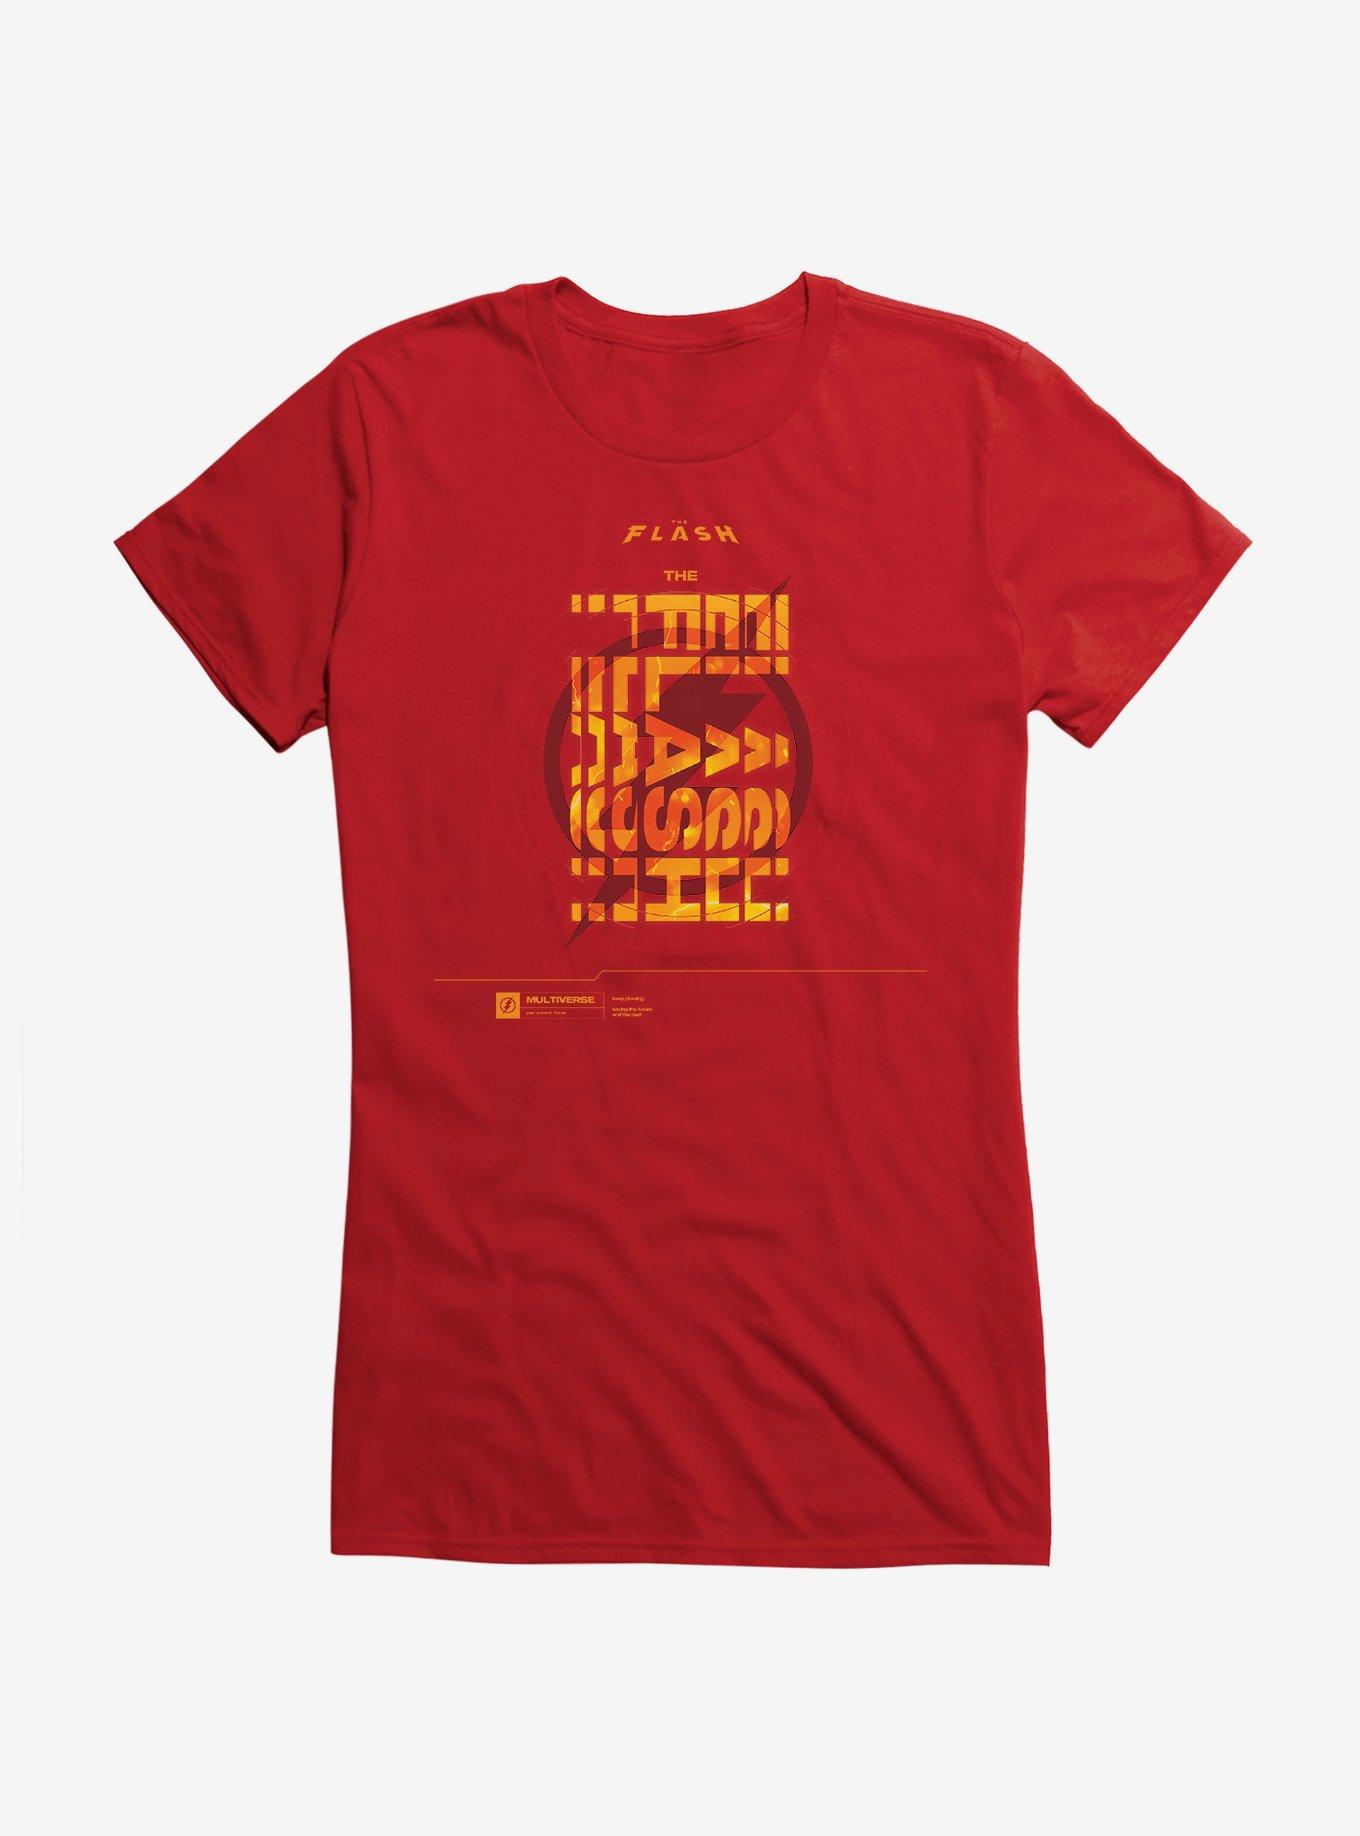 The Flash Multiverse Target Logo Girls T-Shirt, RED, hi-res